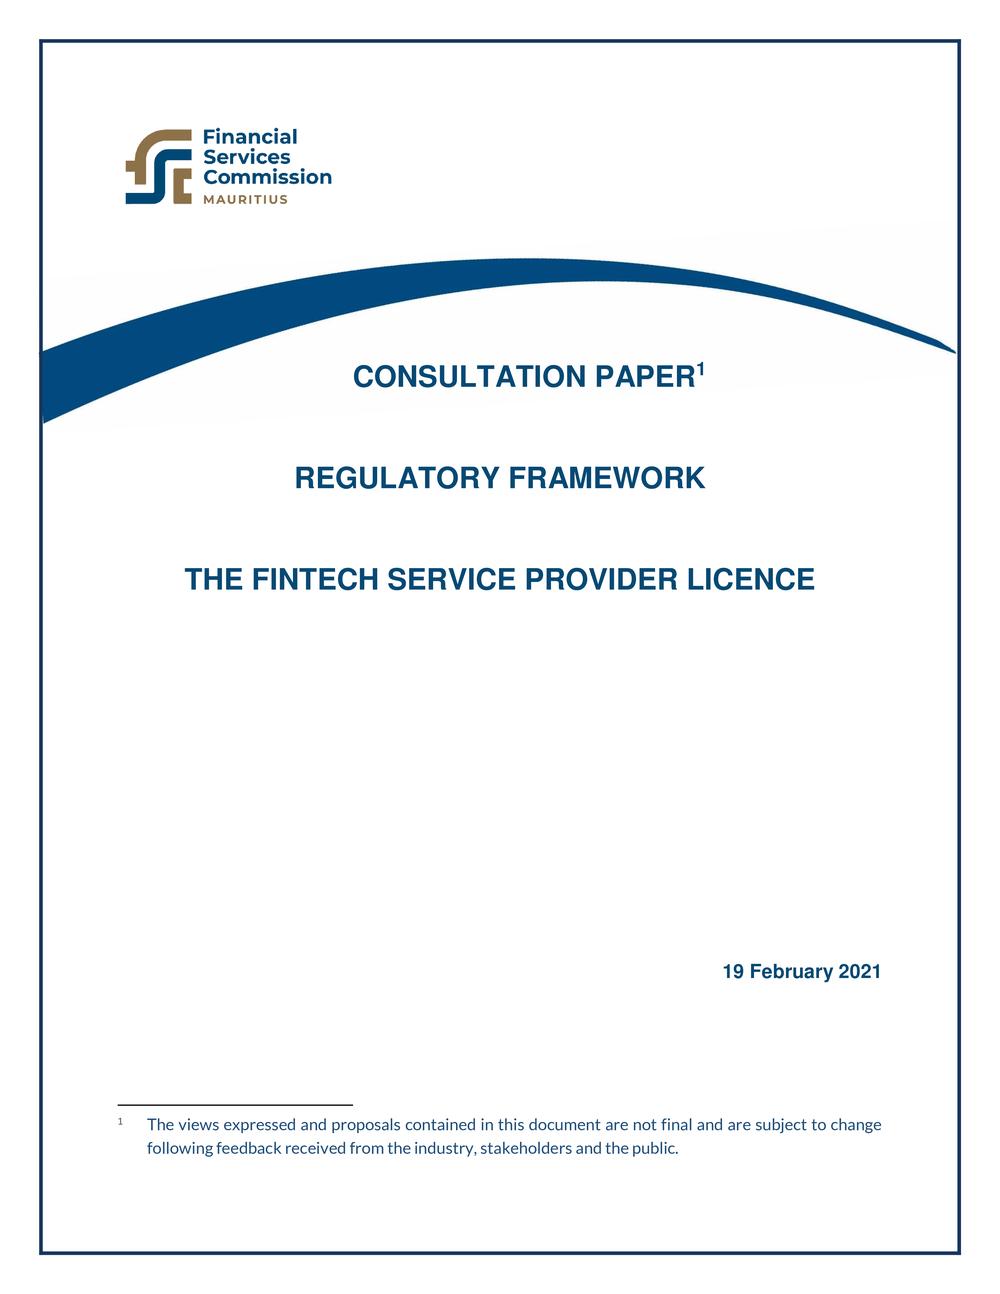 Consultation Paper - The FinTech Service Provider License